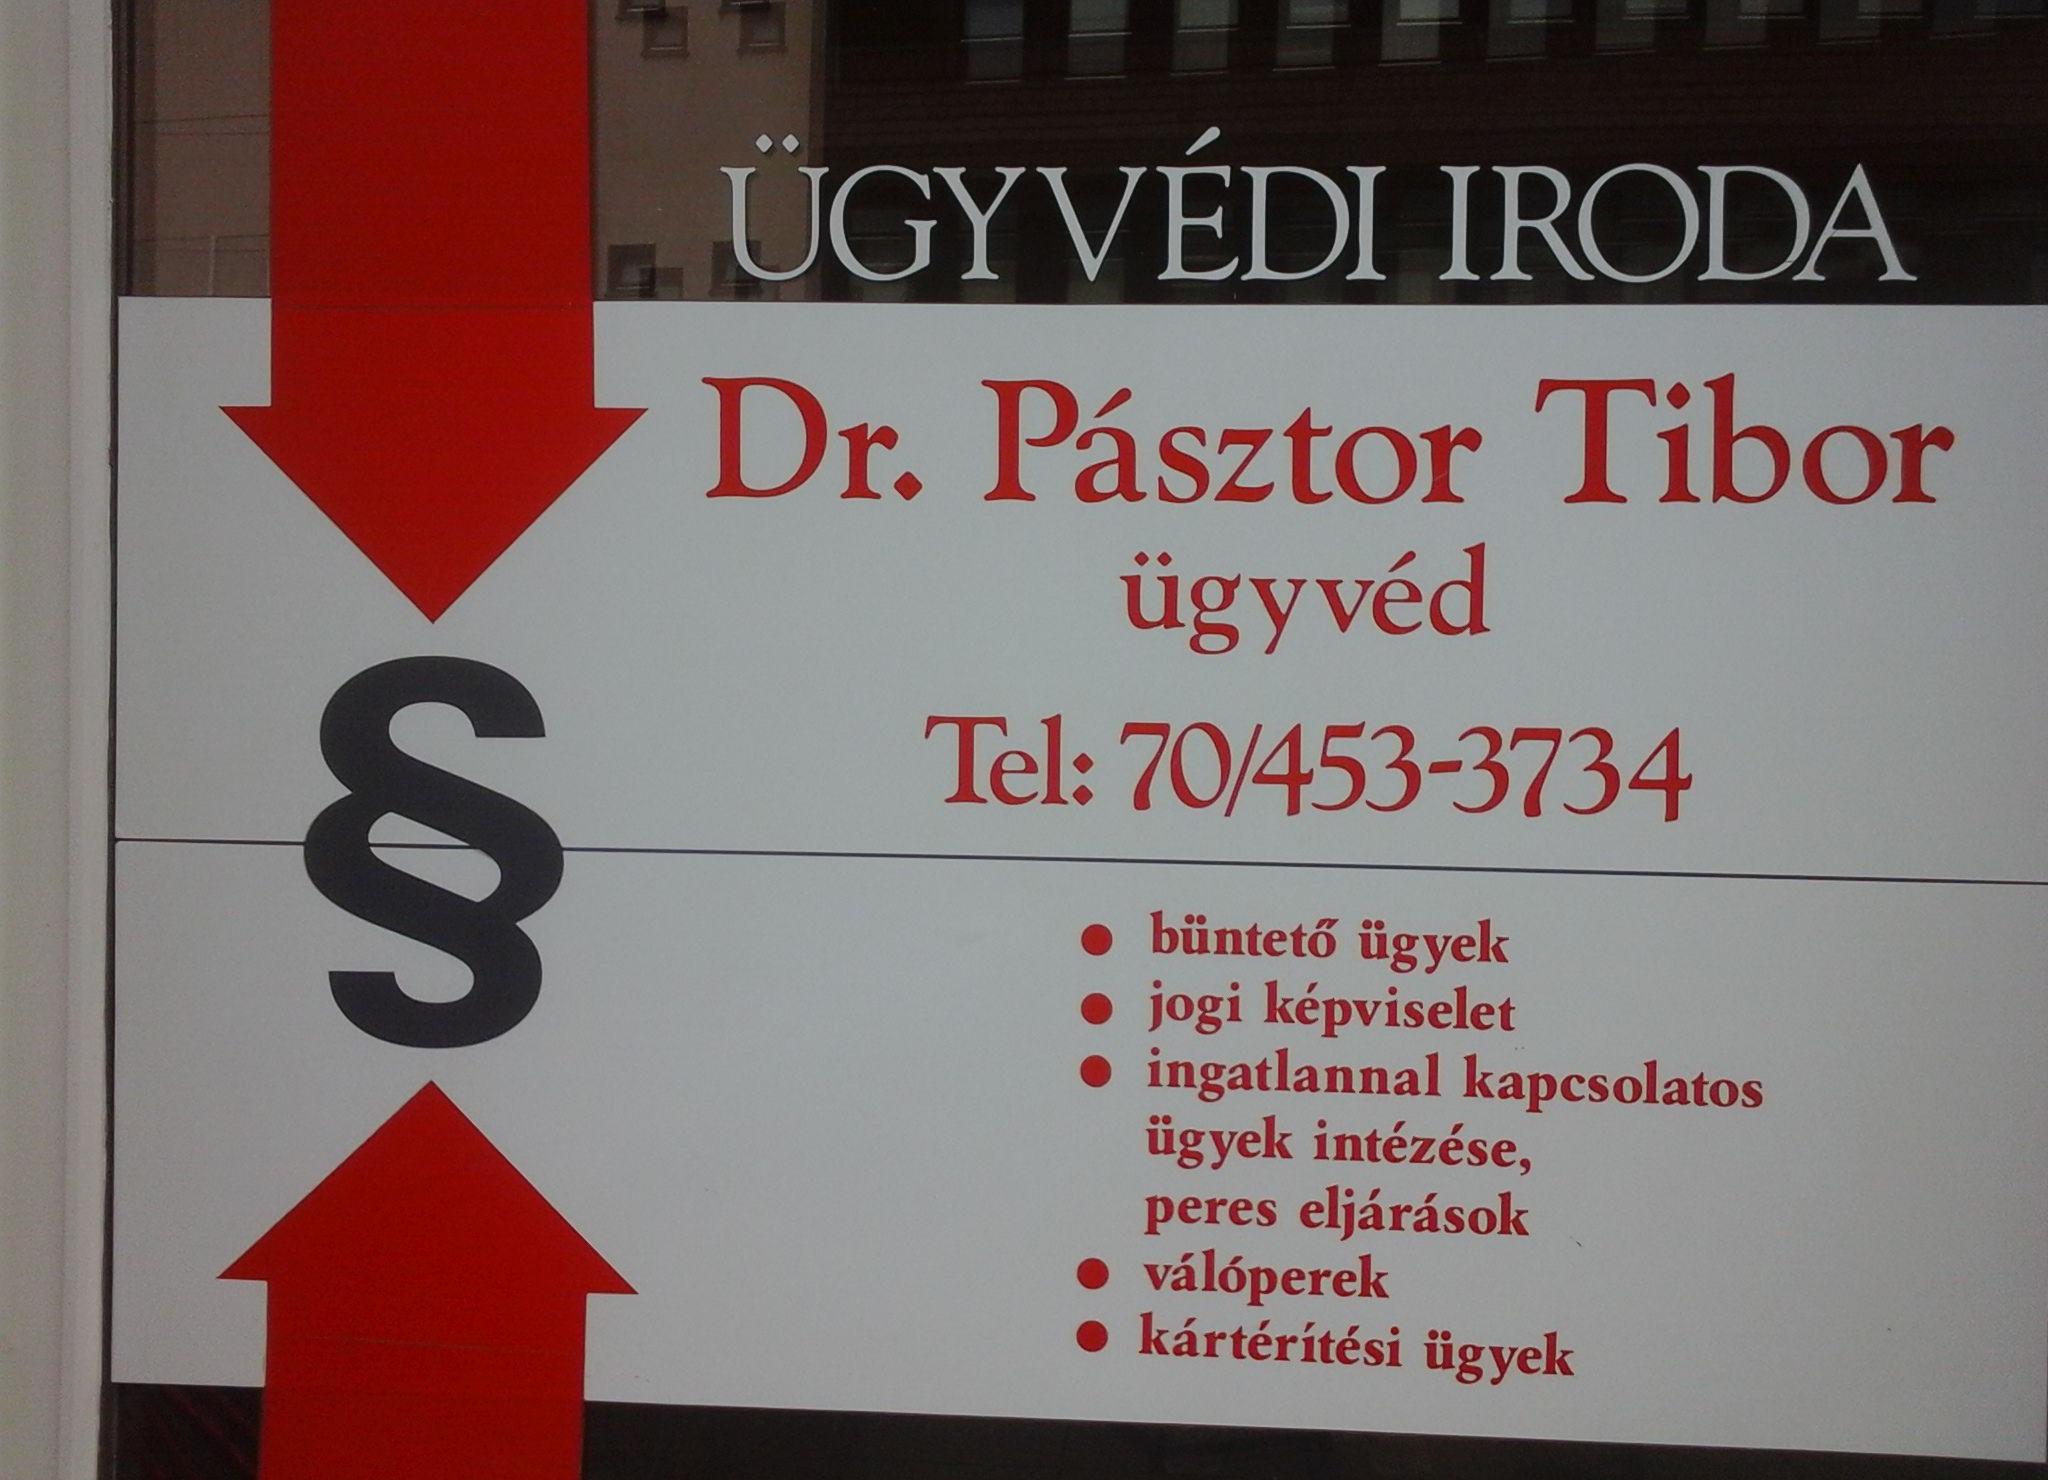 Images Dr Pásztor Tibor ügyvéd